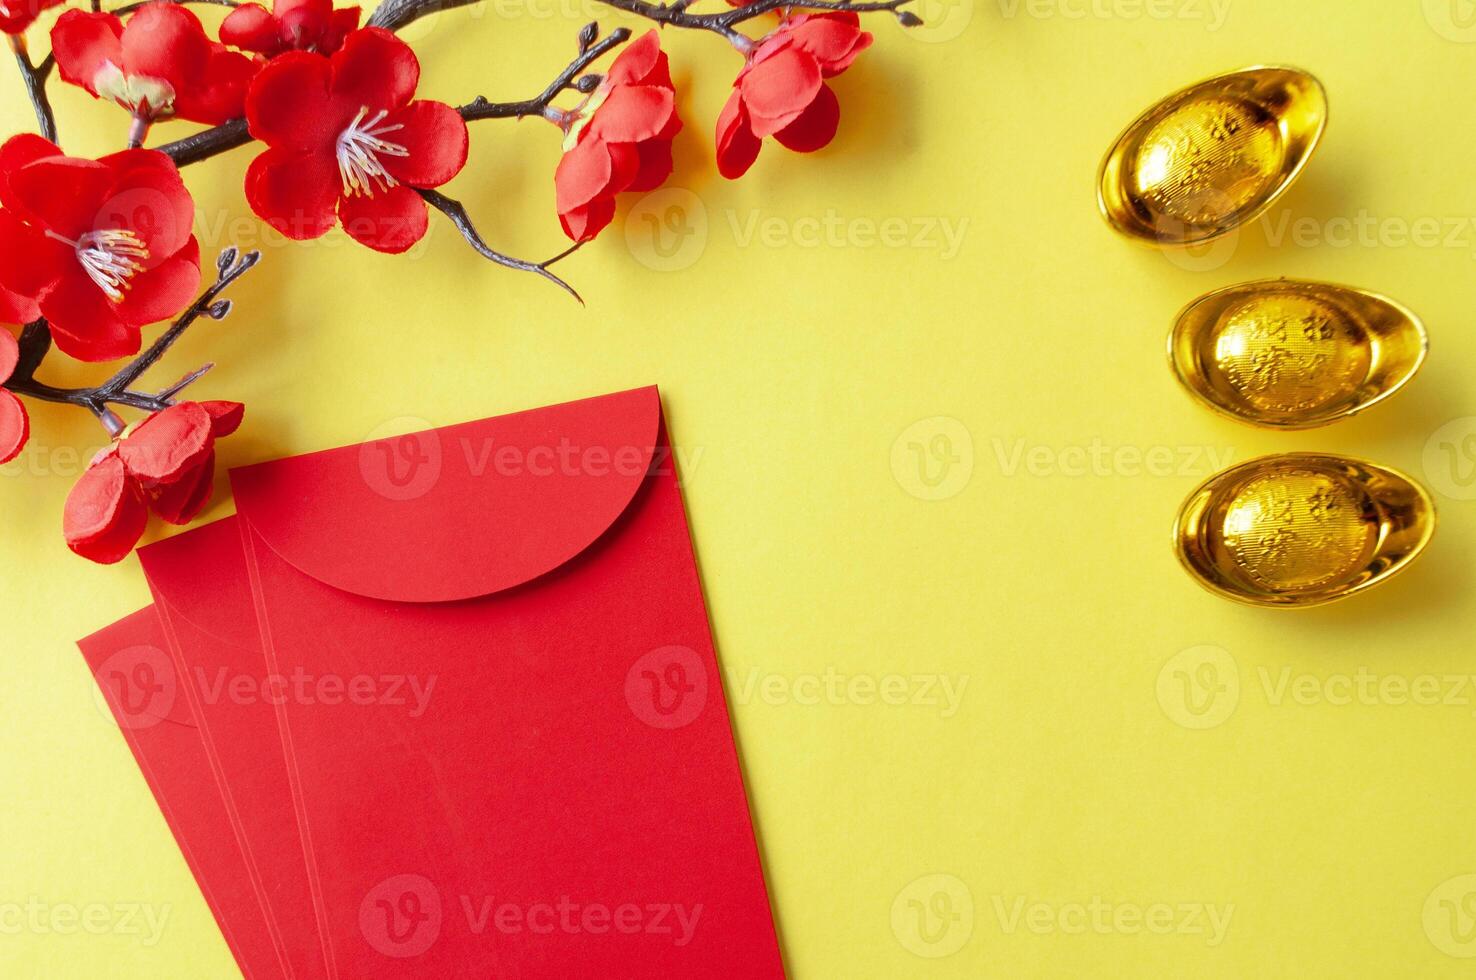 parte superior ver de chino nuevo año rojo paquete, Cereza florecer y dorado lingotes decoración con personalizable espacio para texto o deseos foto